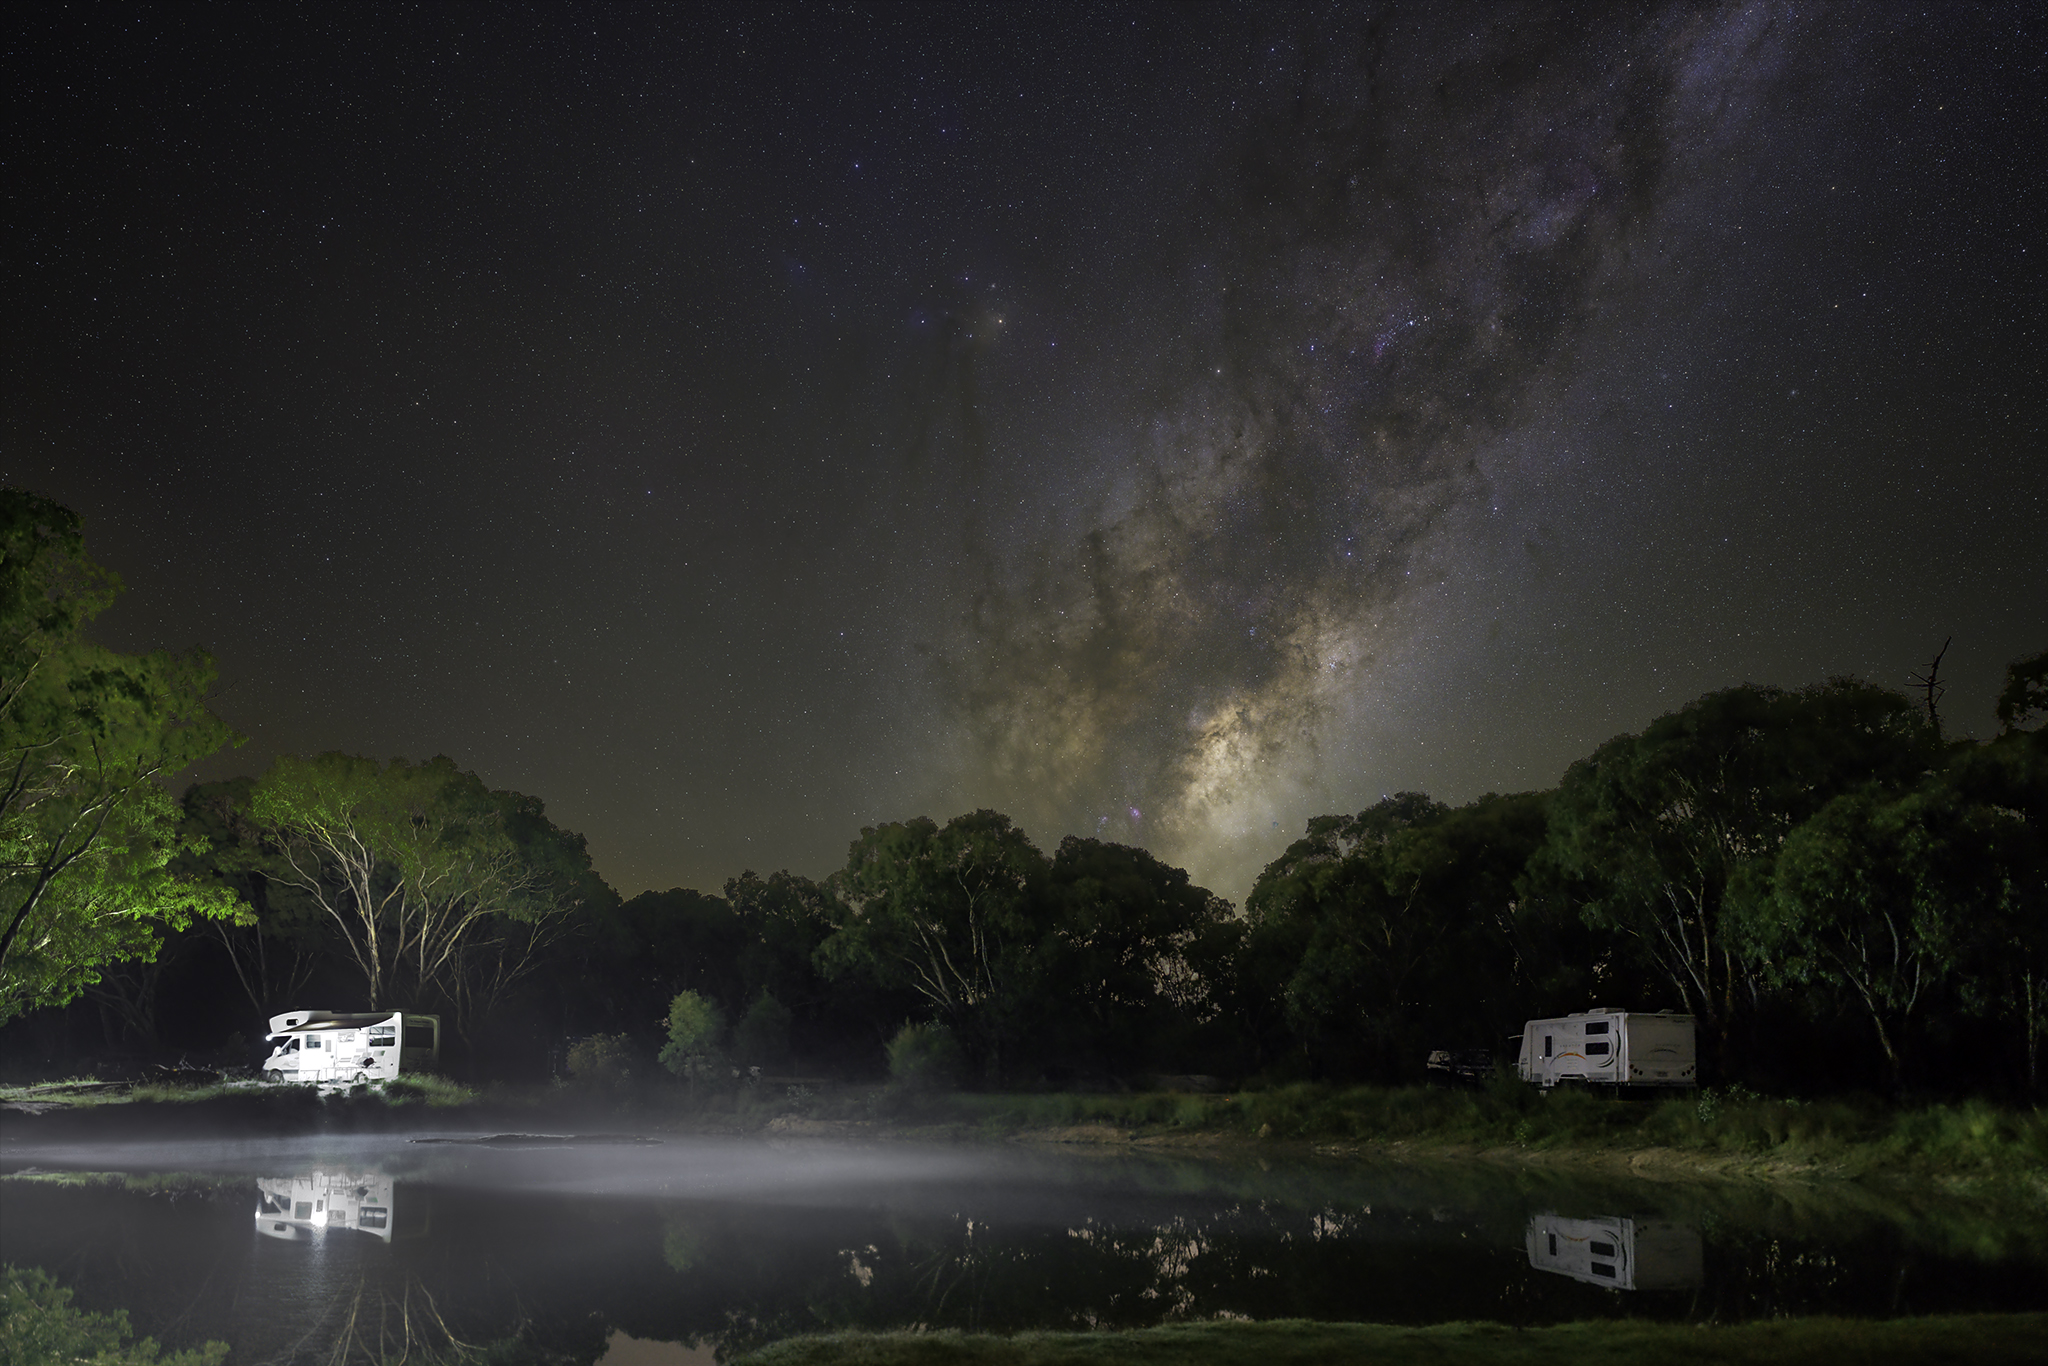 Camping under Milky Way